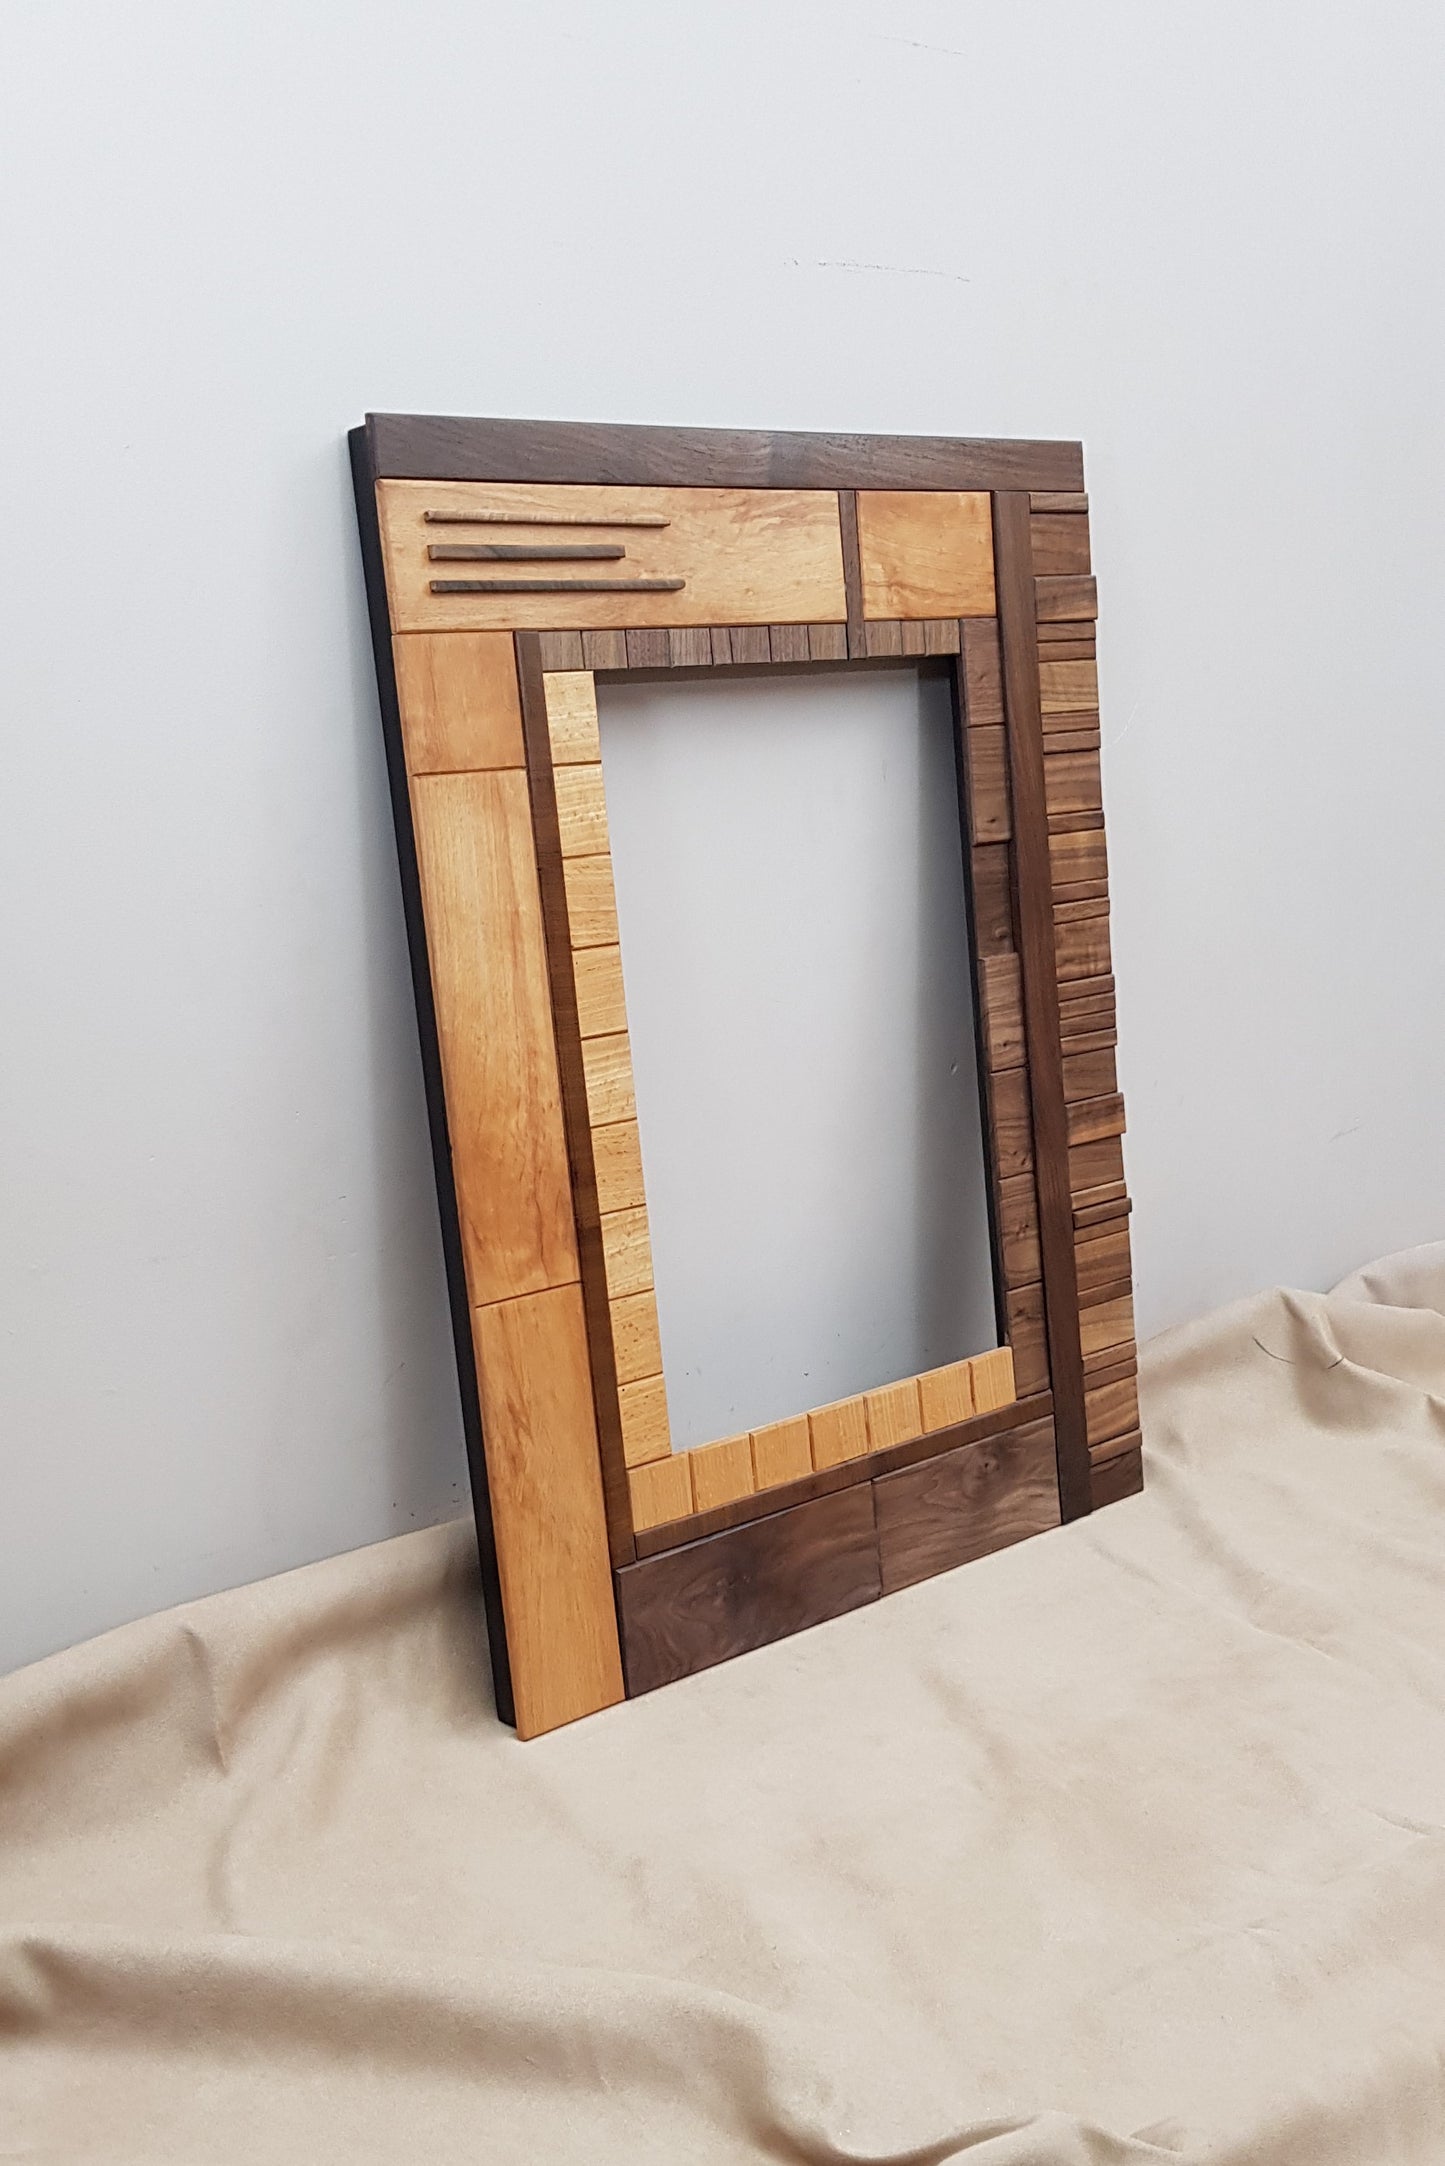 Handmade centrepiece wooden mirror frame